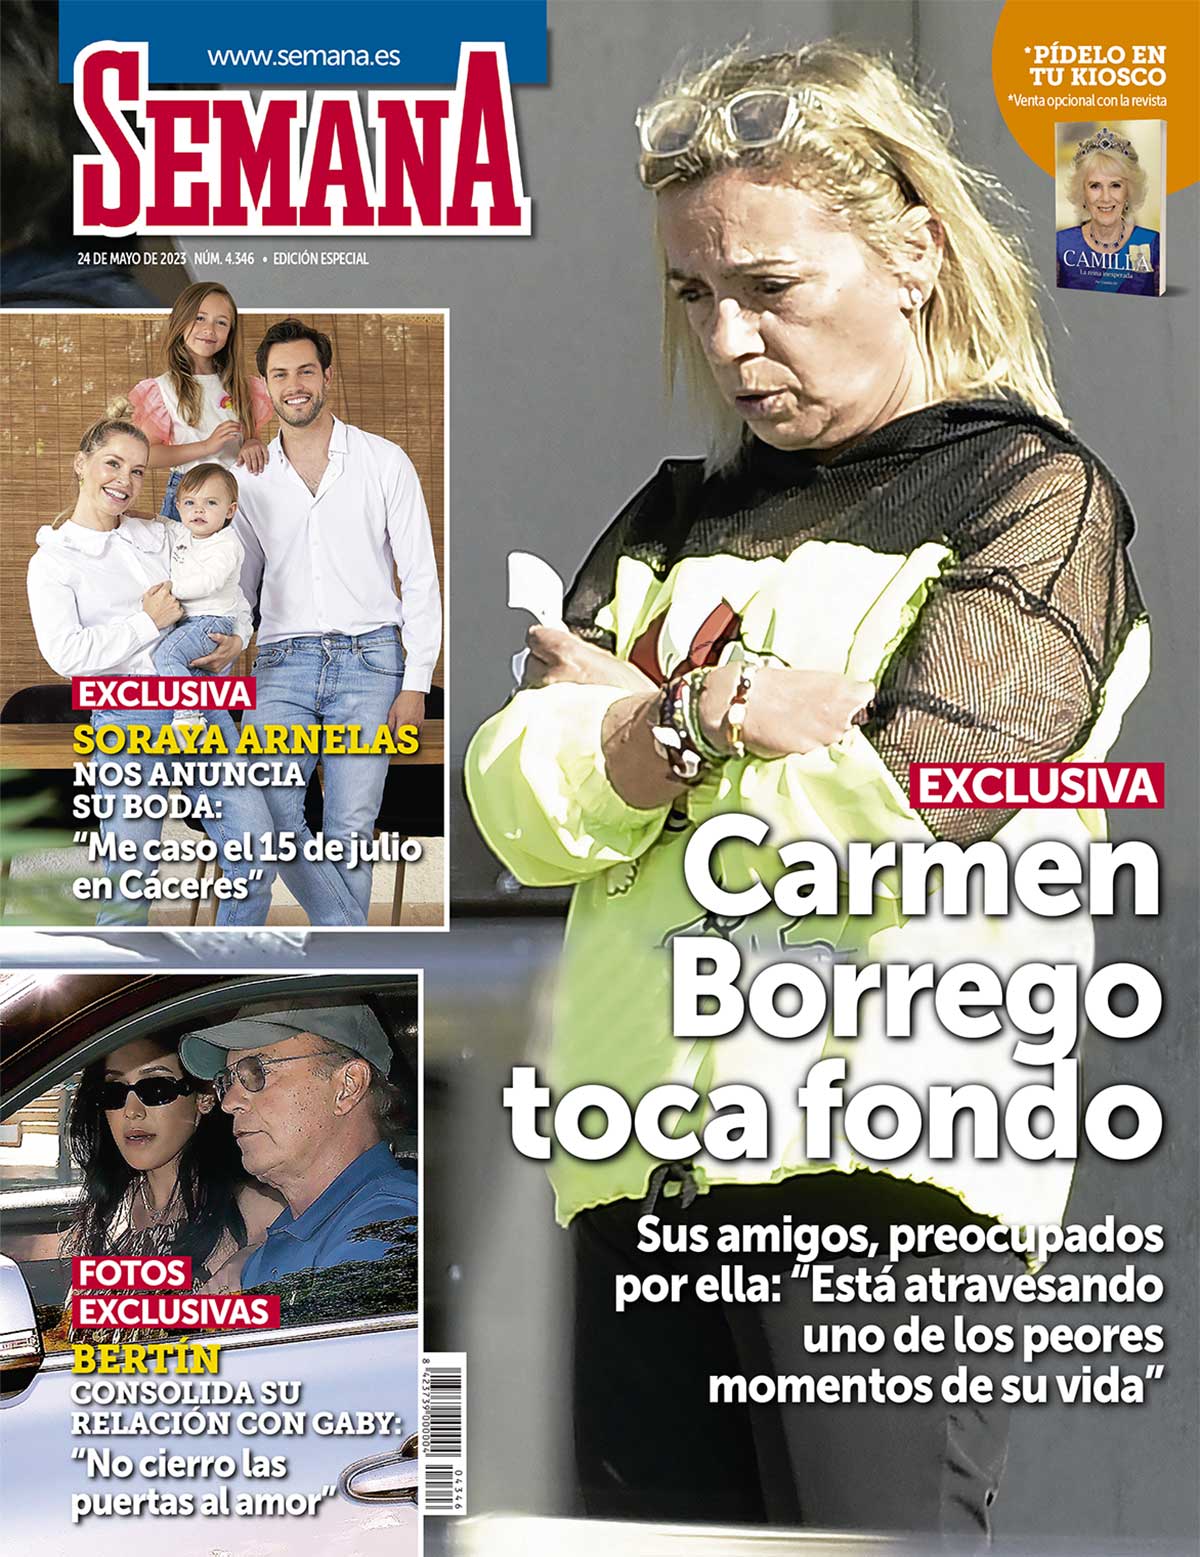 En SEMANA, Soraya Arnelas nos anuncia su boda: "Me caso el 15 de julio en Cáceres"